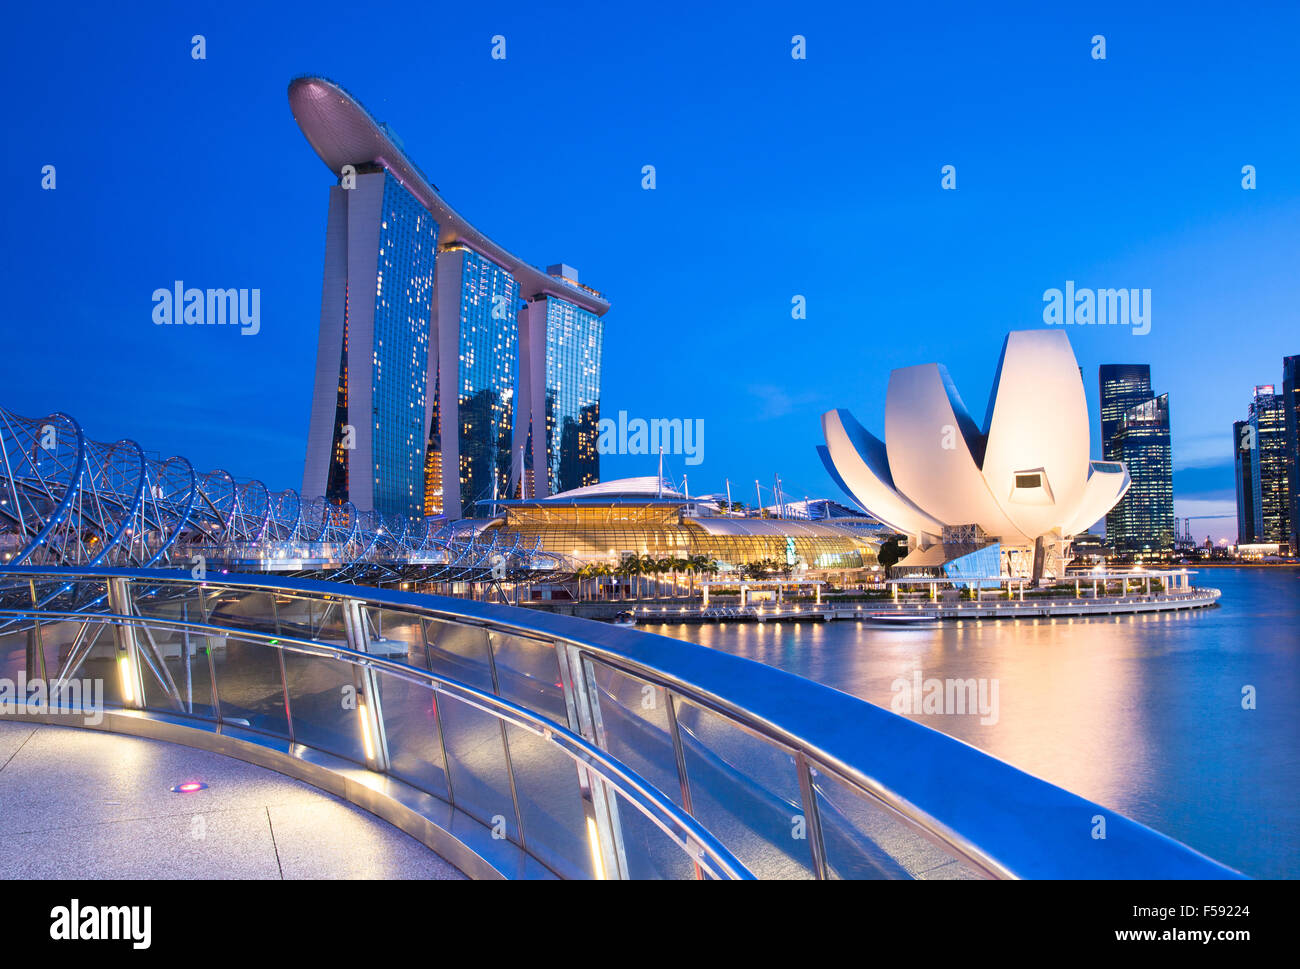 Singapour - 10 juillet : Marina Bay Sands Hotel, Musée ArtScience, Helix Bridge au 10 juillet 2013. Banque D'Images